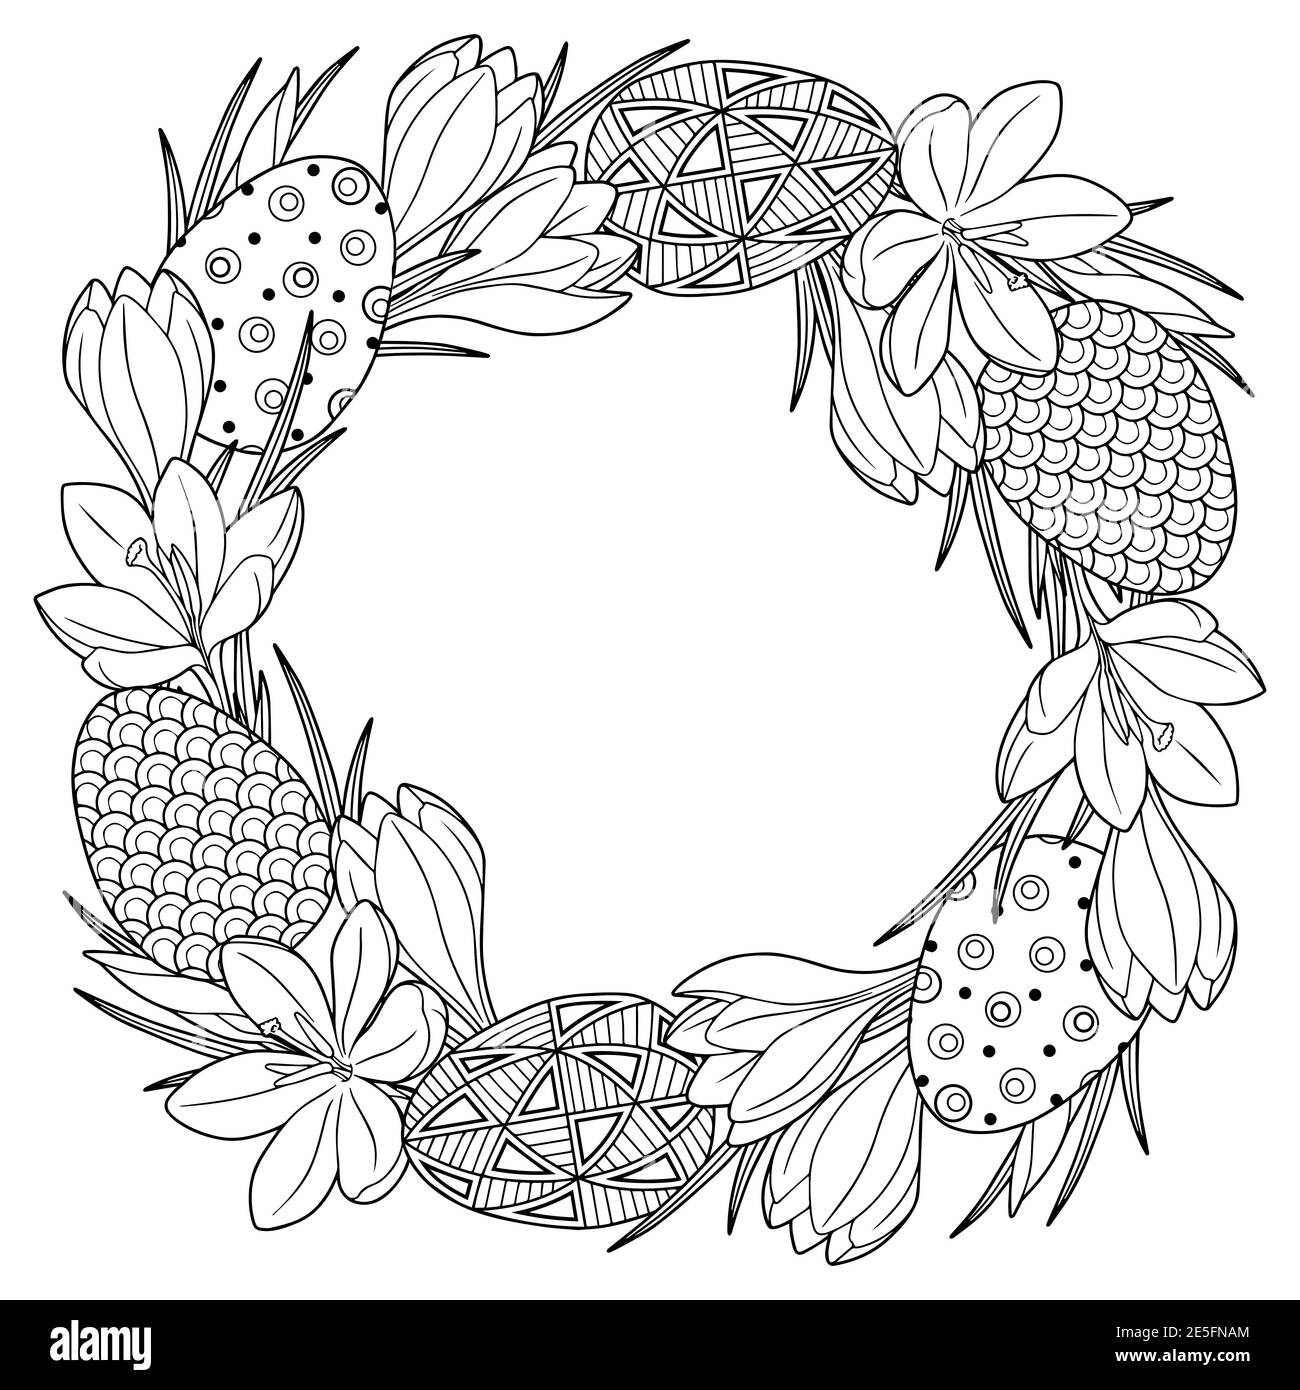 Frohe Ostern. Rahmen mit schwarzen und weißen Doodle ostereiern und Frühlingscrocus Blumen. Malbuch für Erwachsene zur Entspannung und Meditation. Vektor Stock Vektor